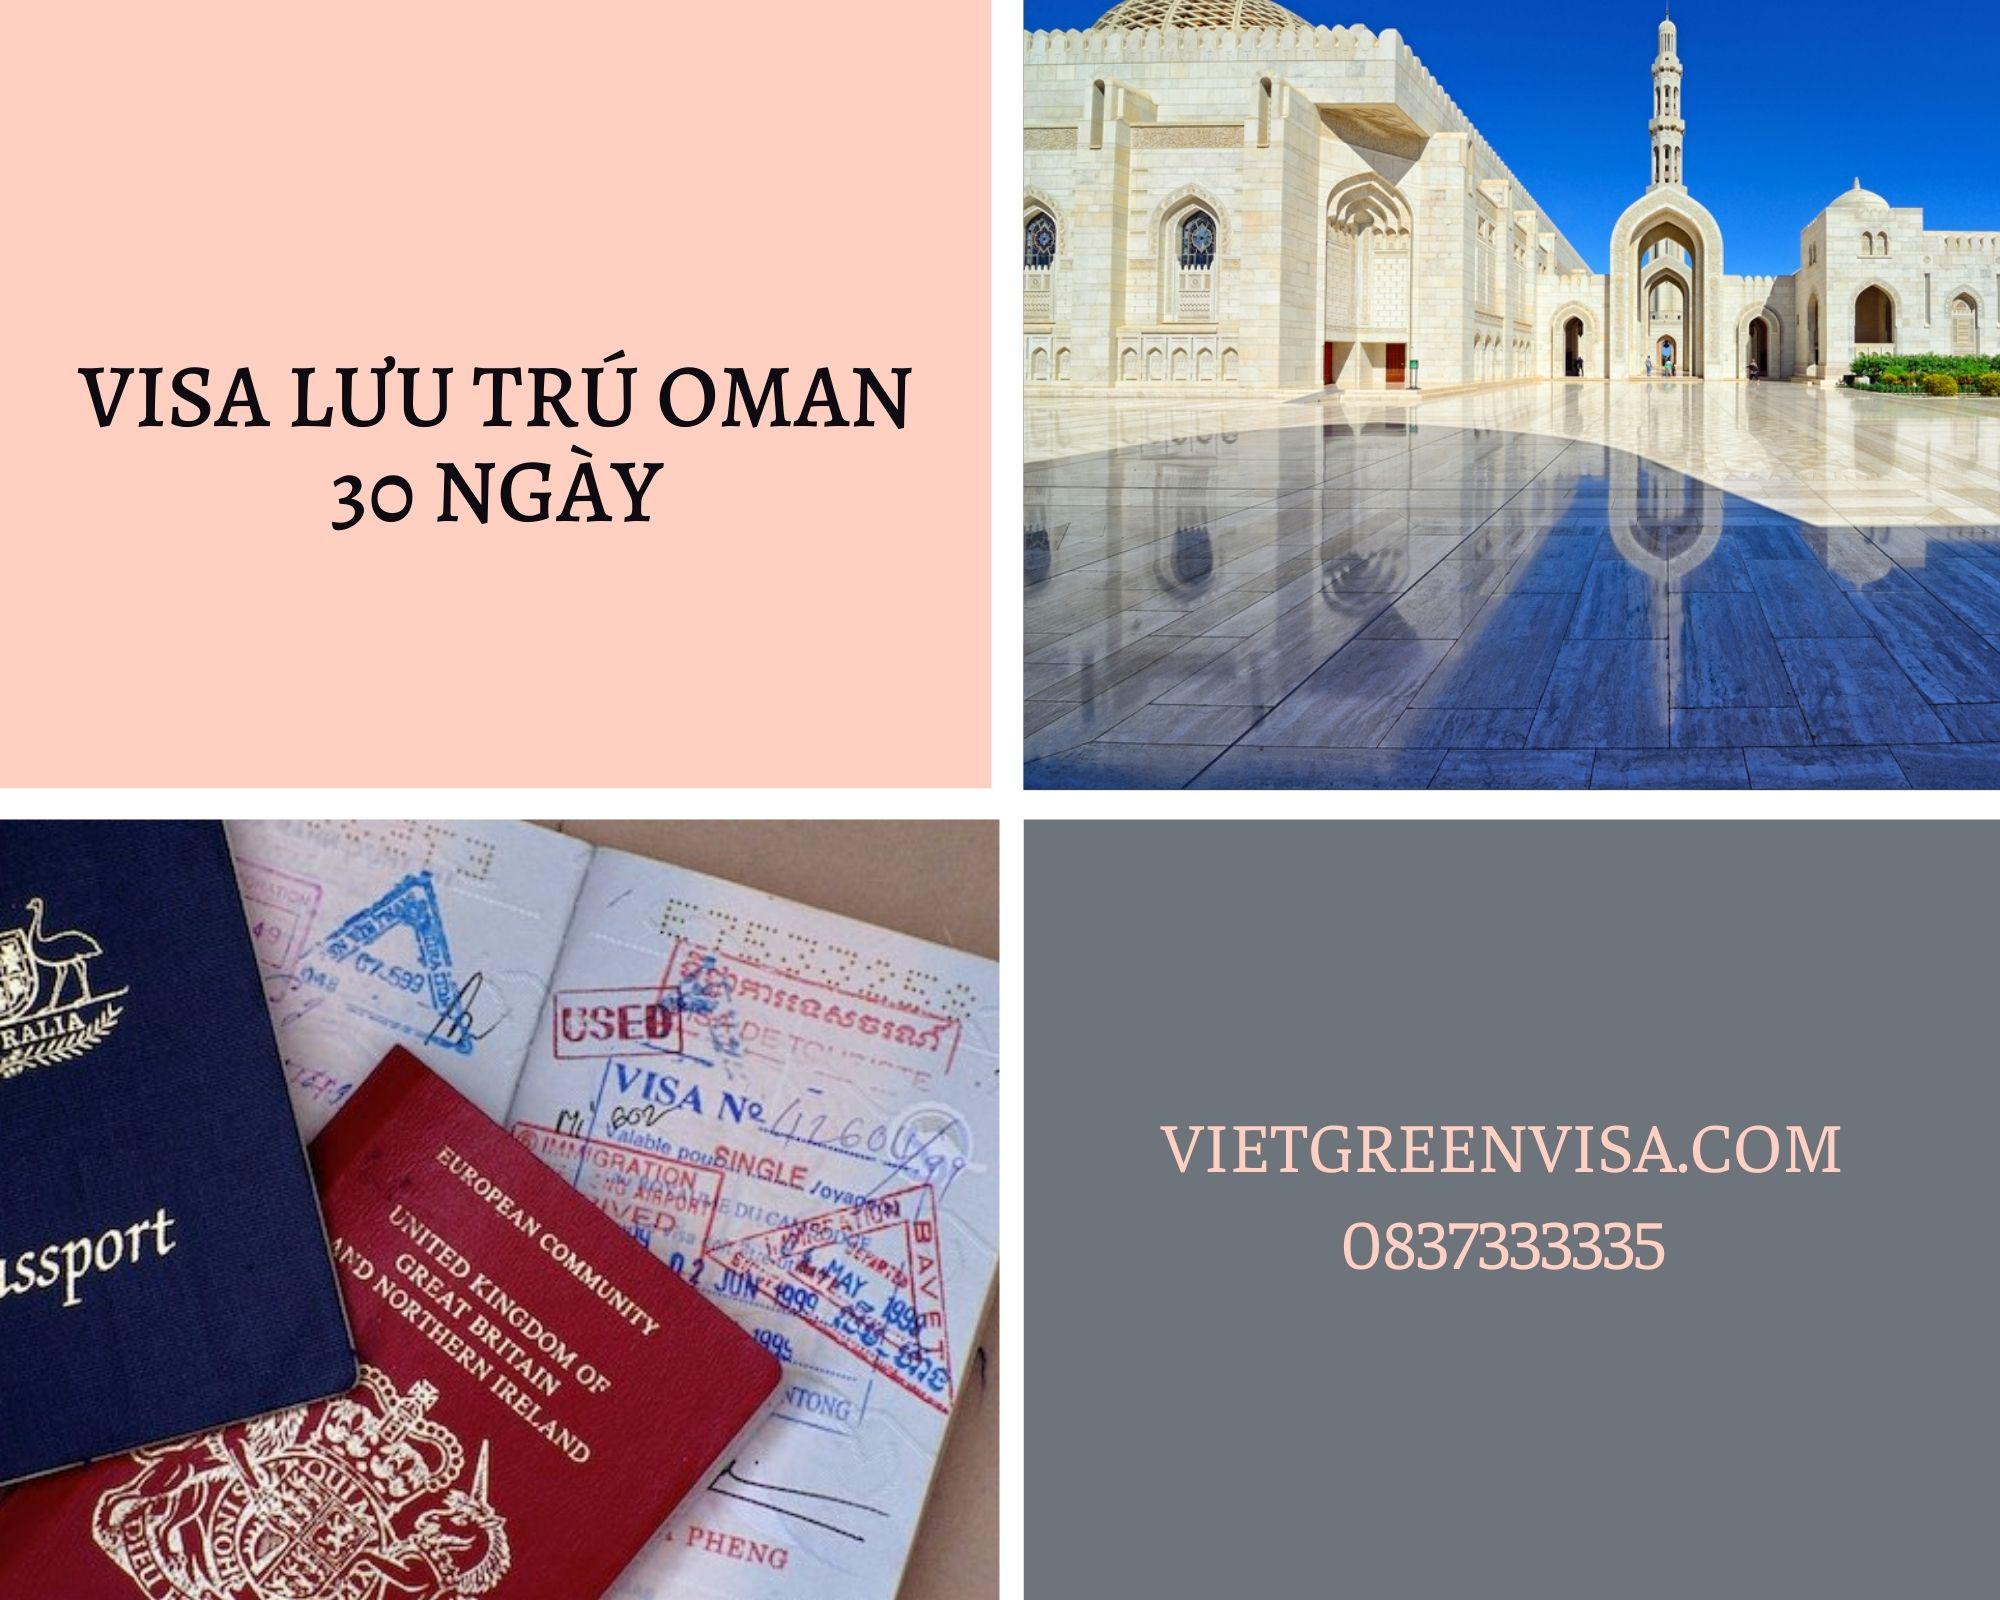 Dịch  vụ visa Oman lưu trú 30 ngày tại Hà Nội, Hồ Chí Minh